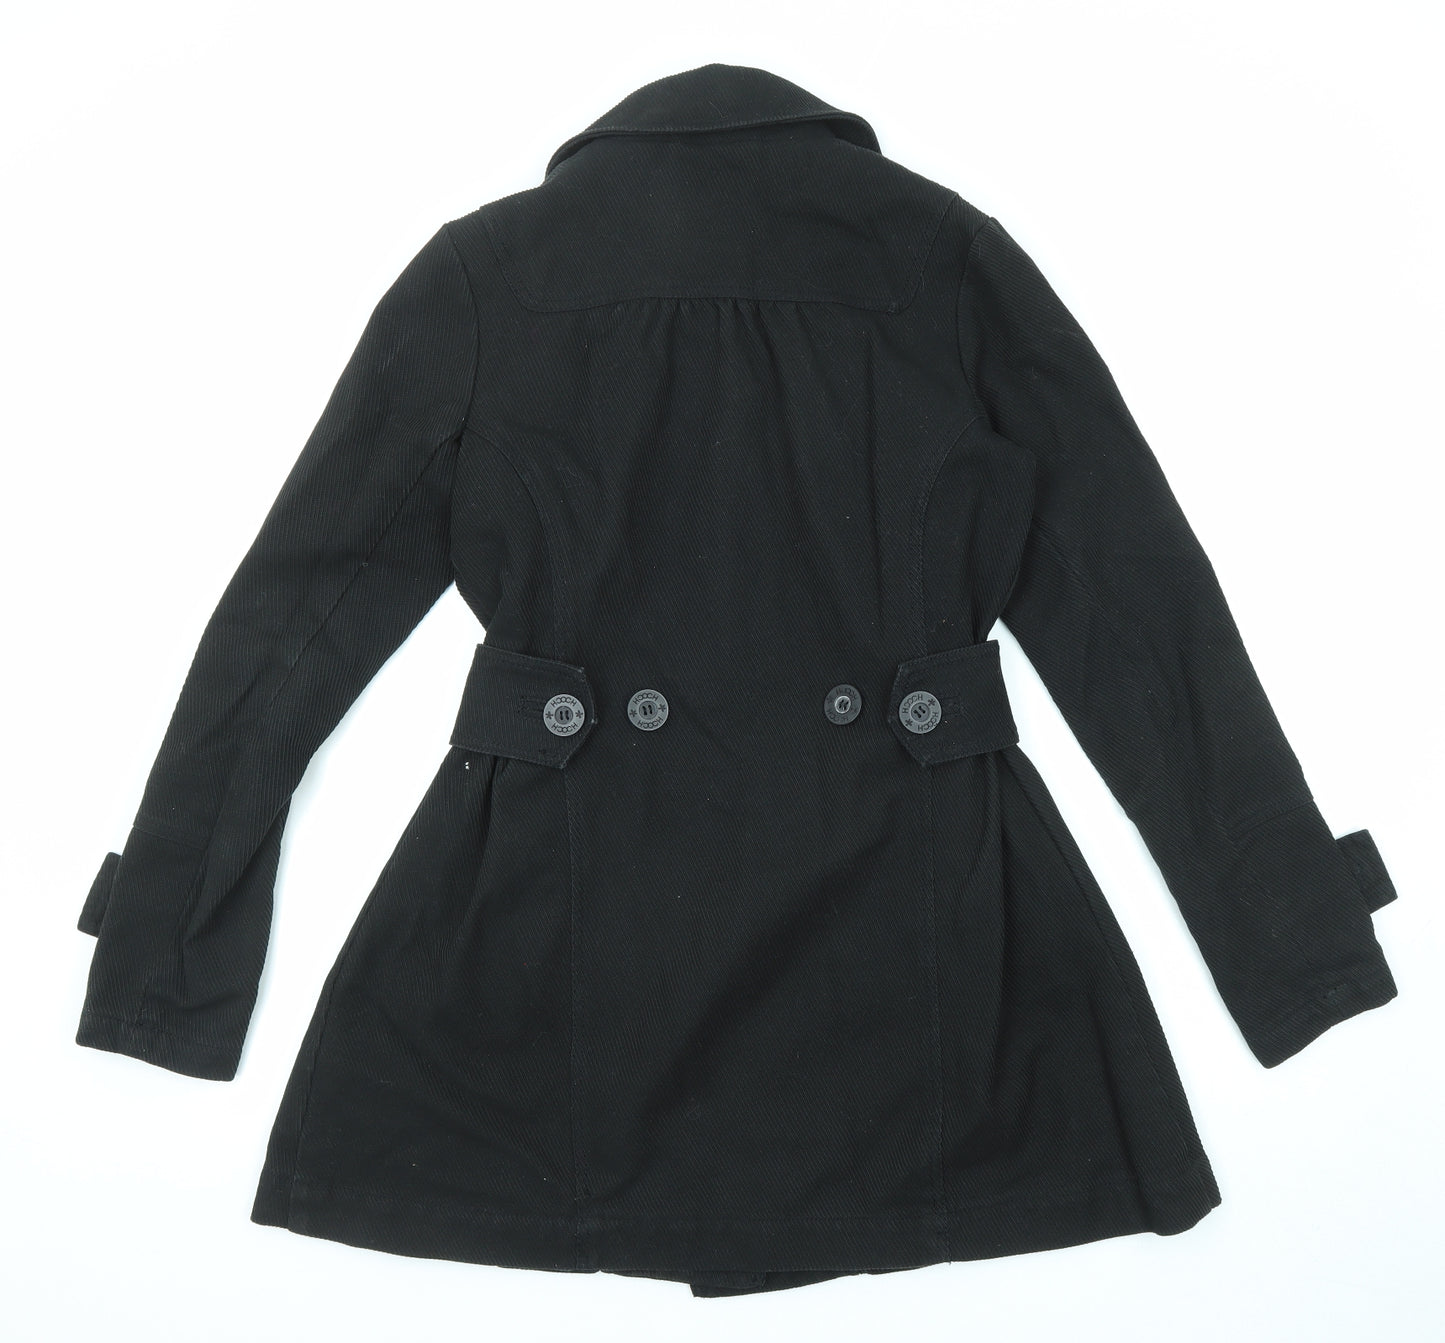 HOOCH Womens Black Pea Coat Coat Size 10 Button